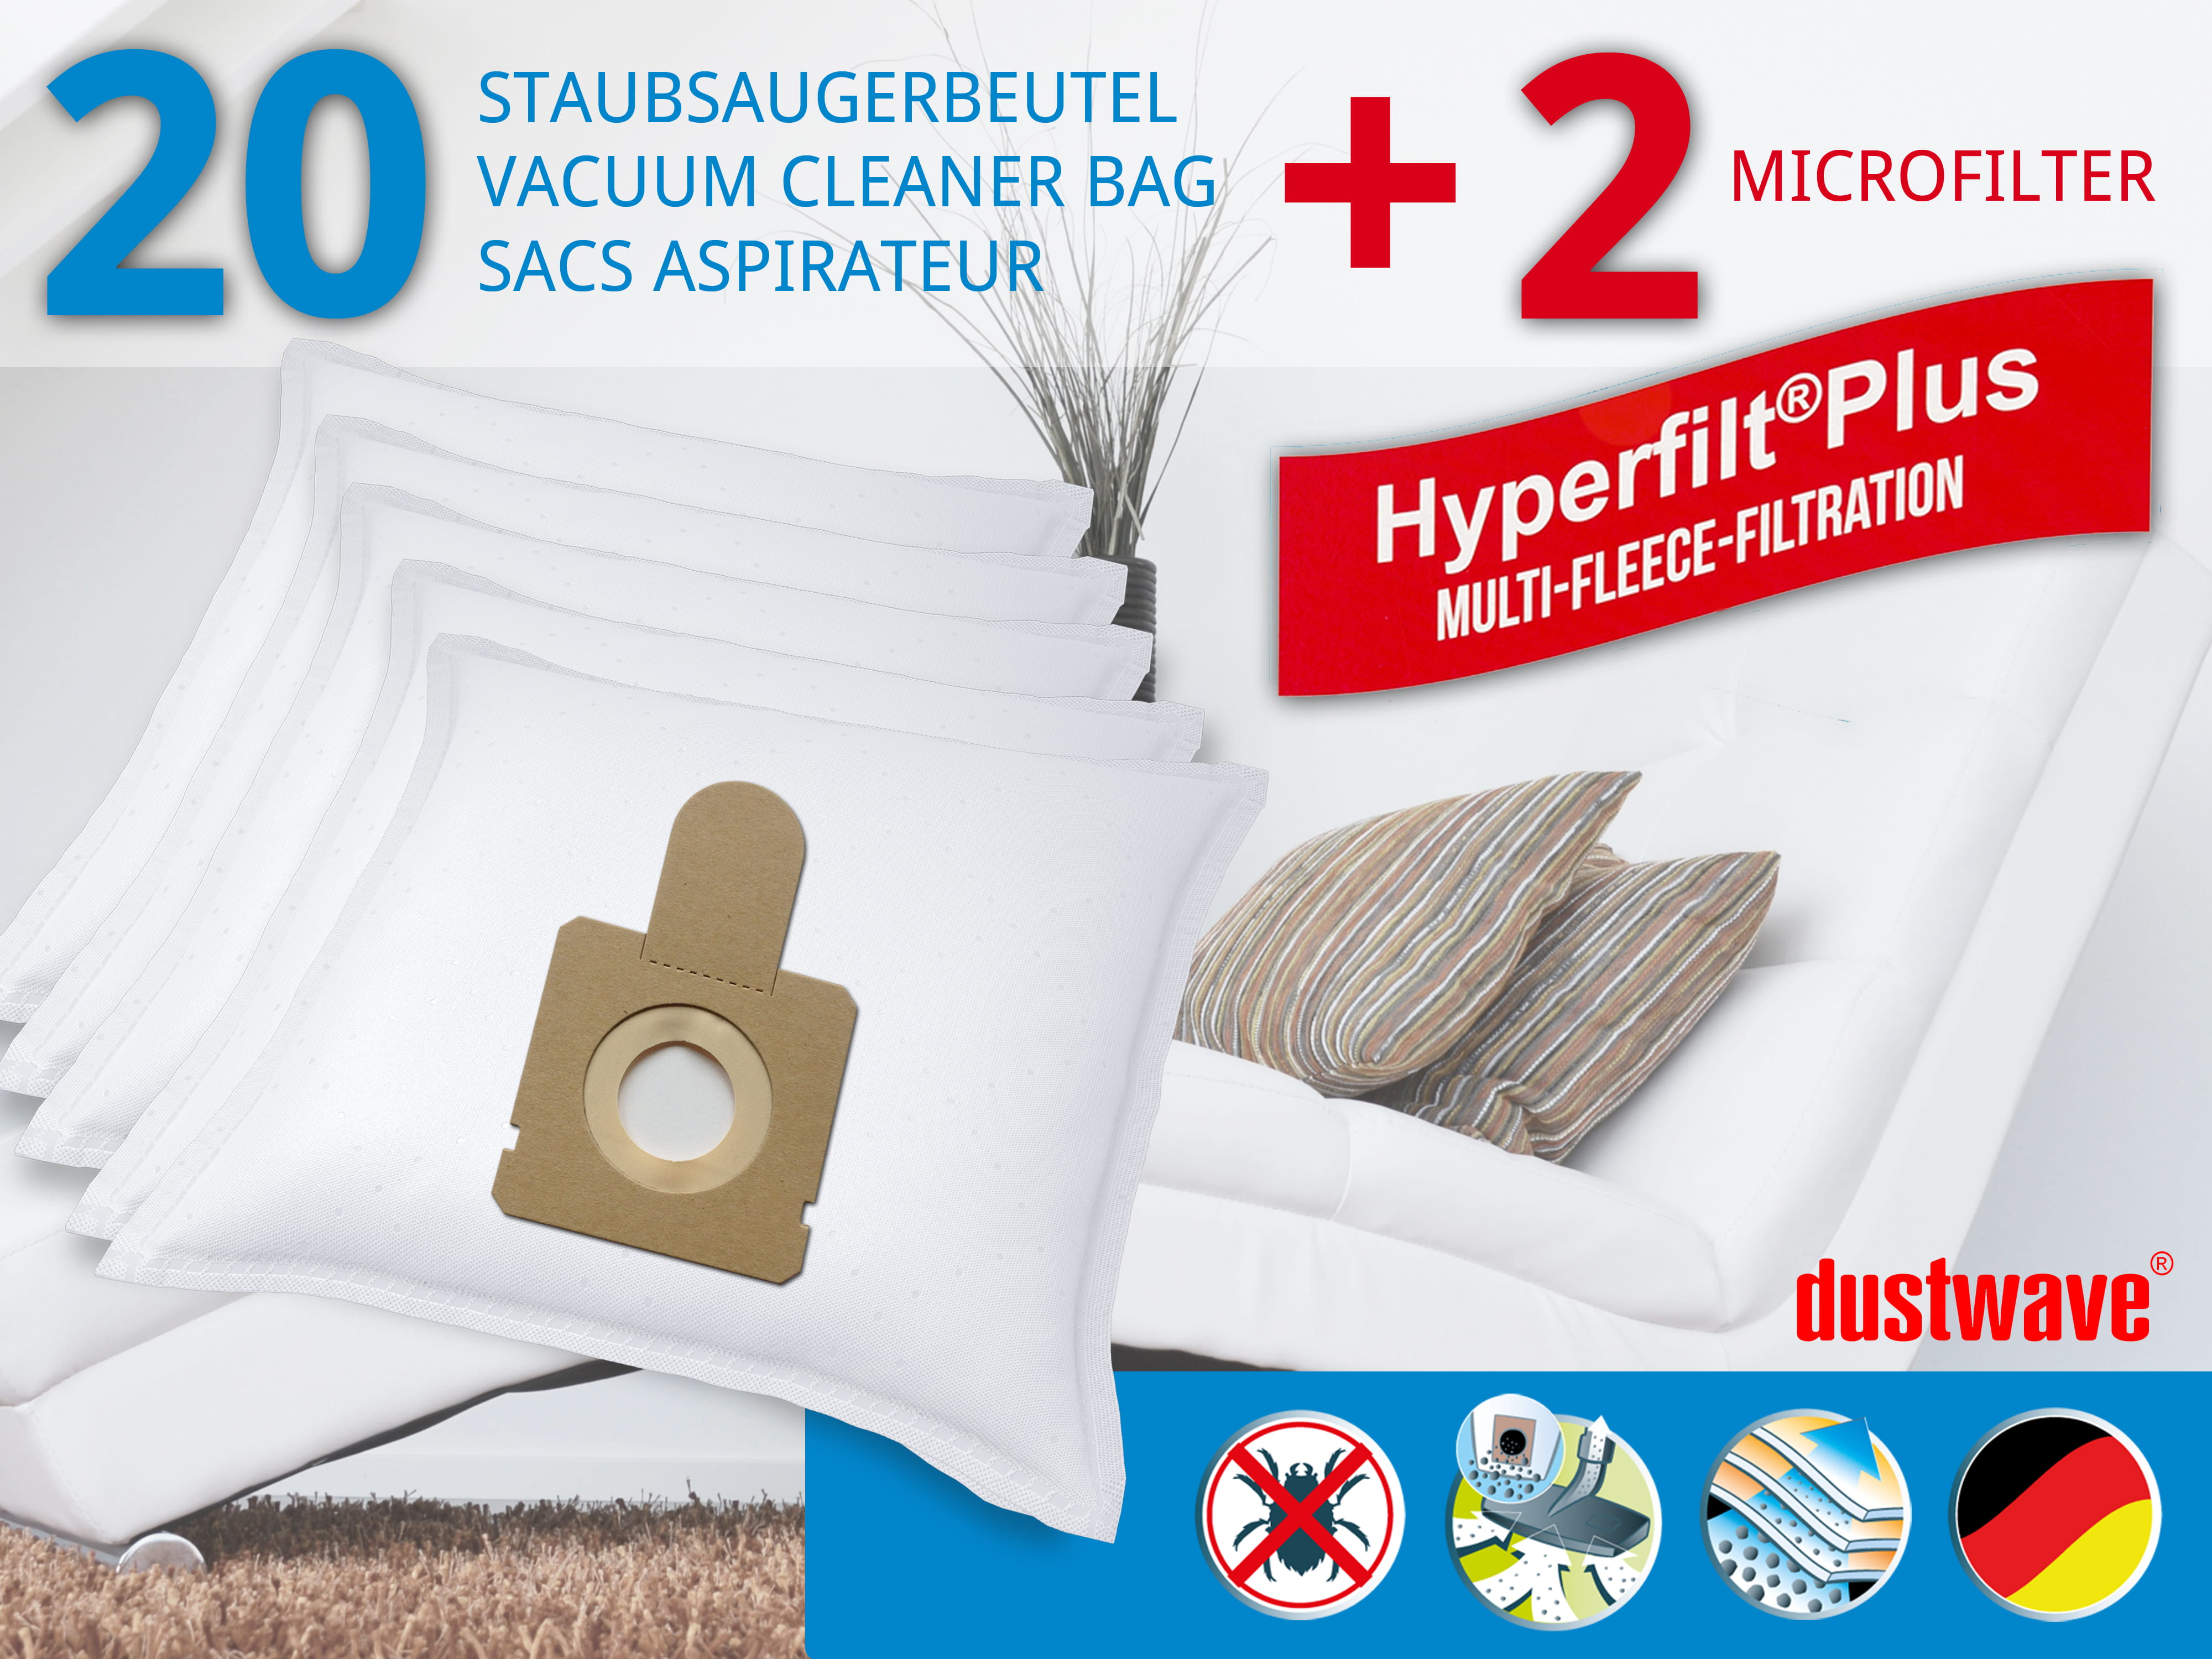 Dustwave® 20 Staubsaugerbeutel für Hoover TFS 5204... FreeSpace - hocheffizient, mehrlagiges Mikrovlies mit Hygieneverschluss - Made in Germany